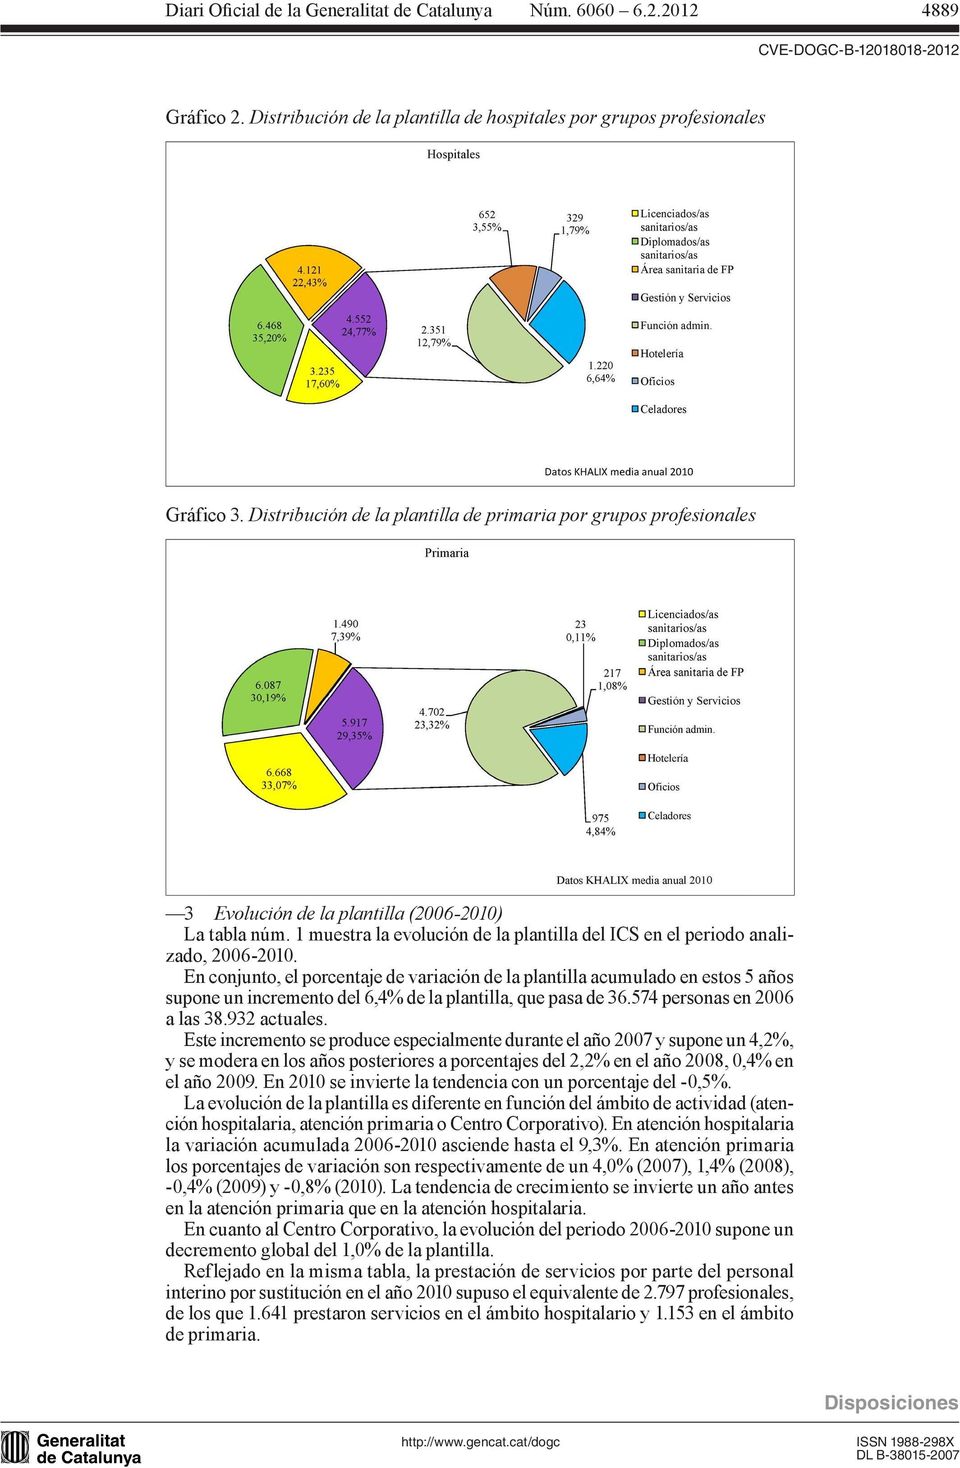 1 muestra la evolución de la plantilla del ICS en el periodo analizado, 2006-2010.